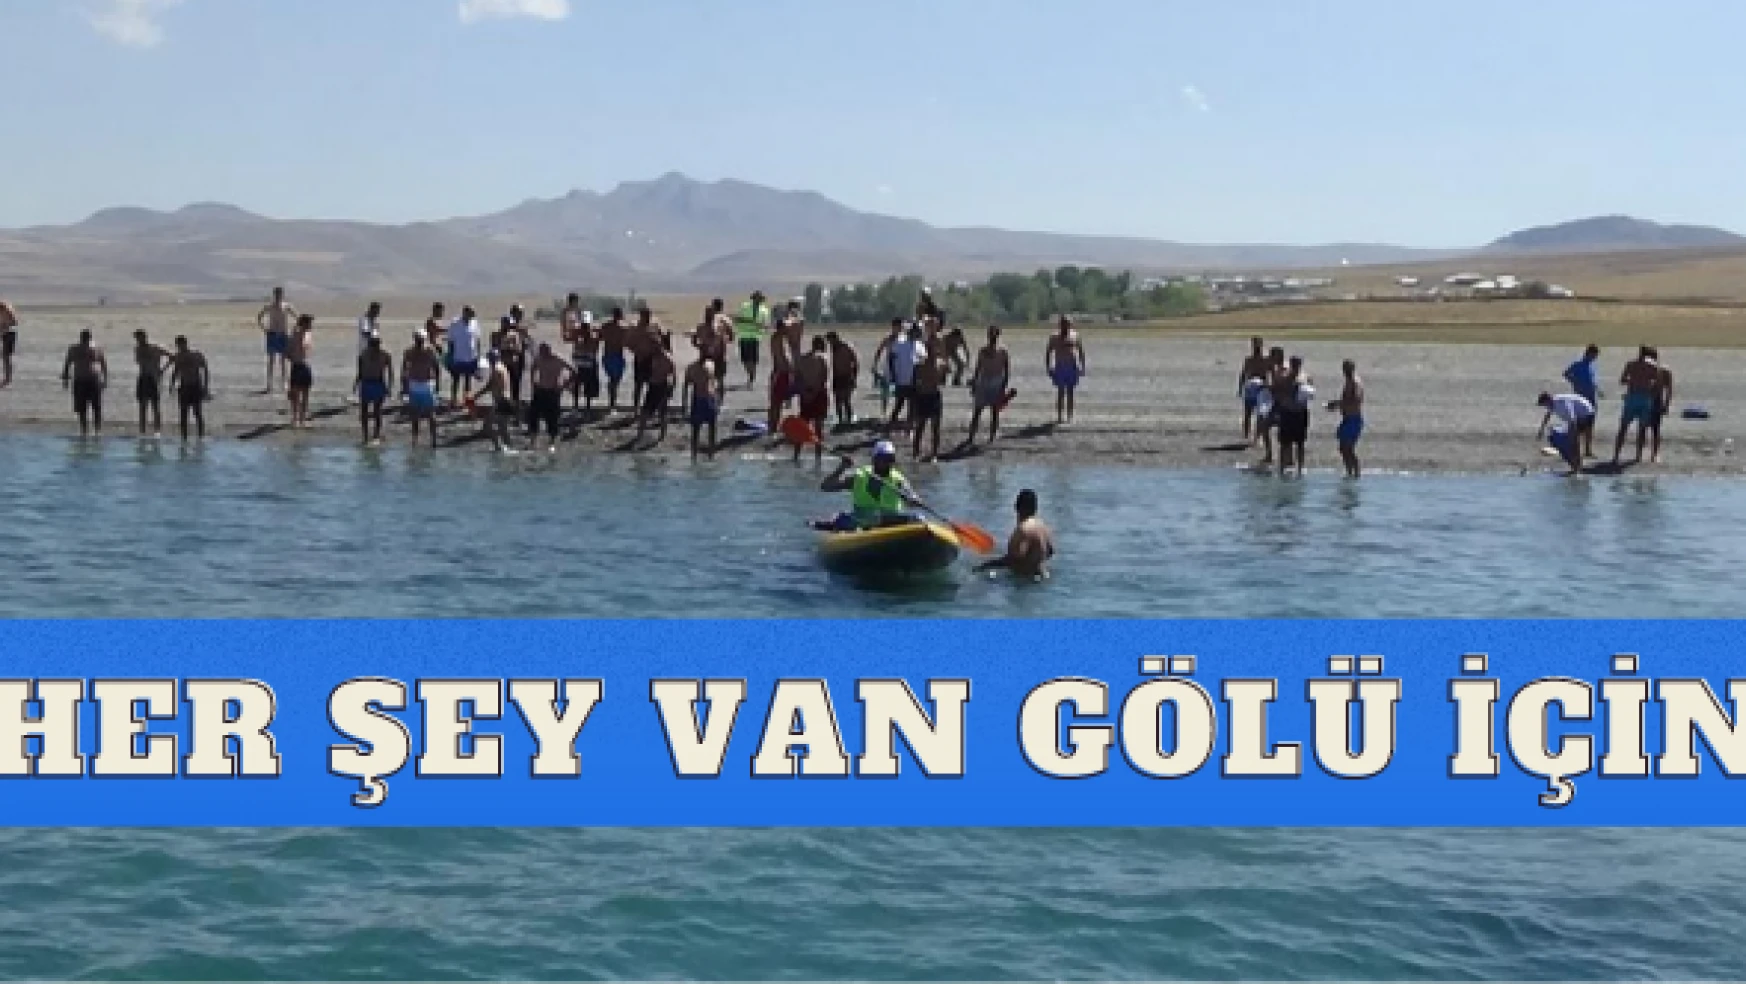 Van Gölü Aktivistleri yine iş başında: Van Gölü için yüzdüler de yüzdüler...